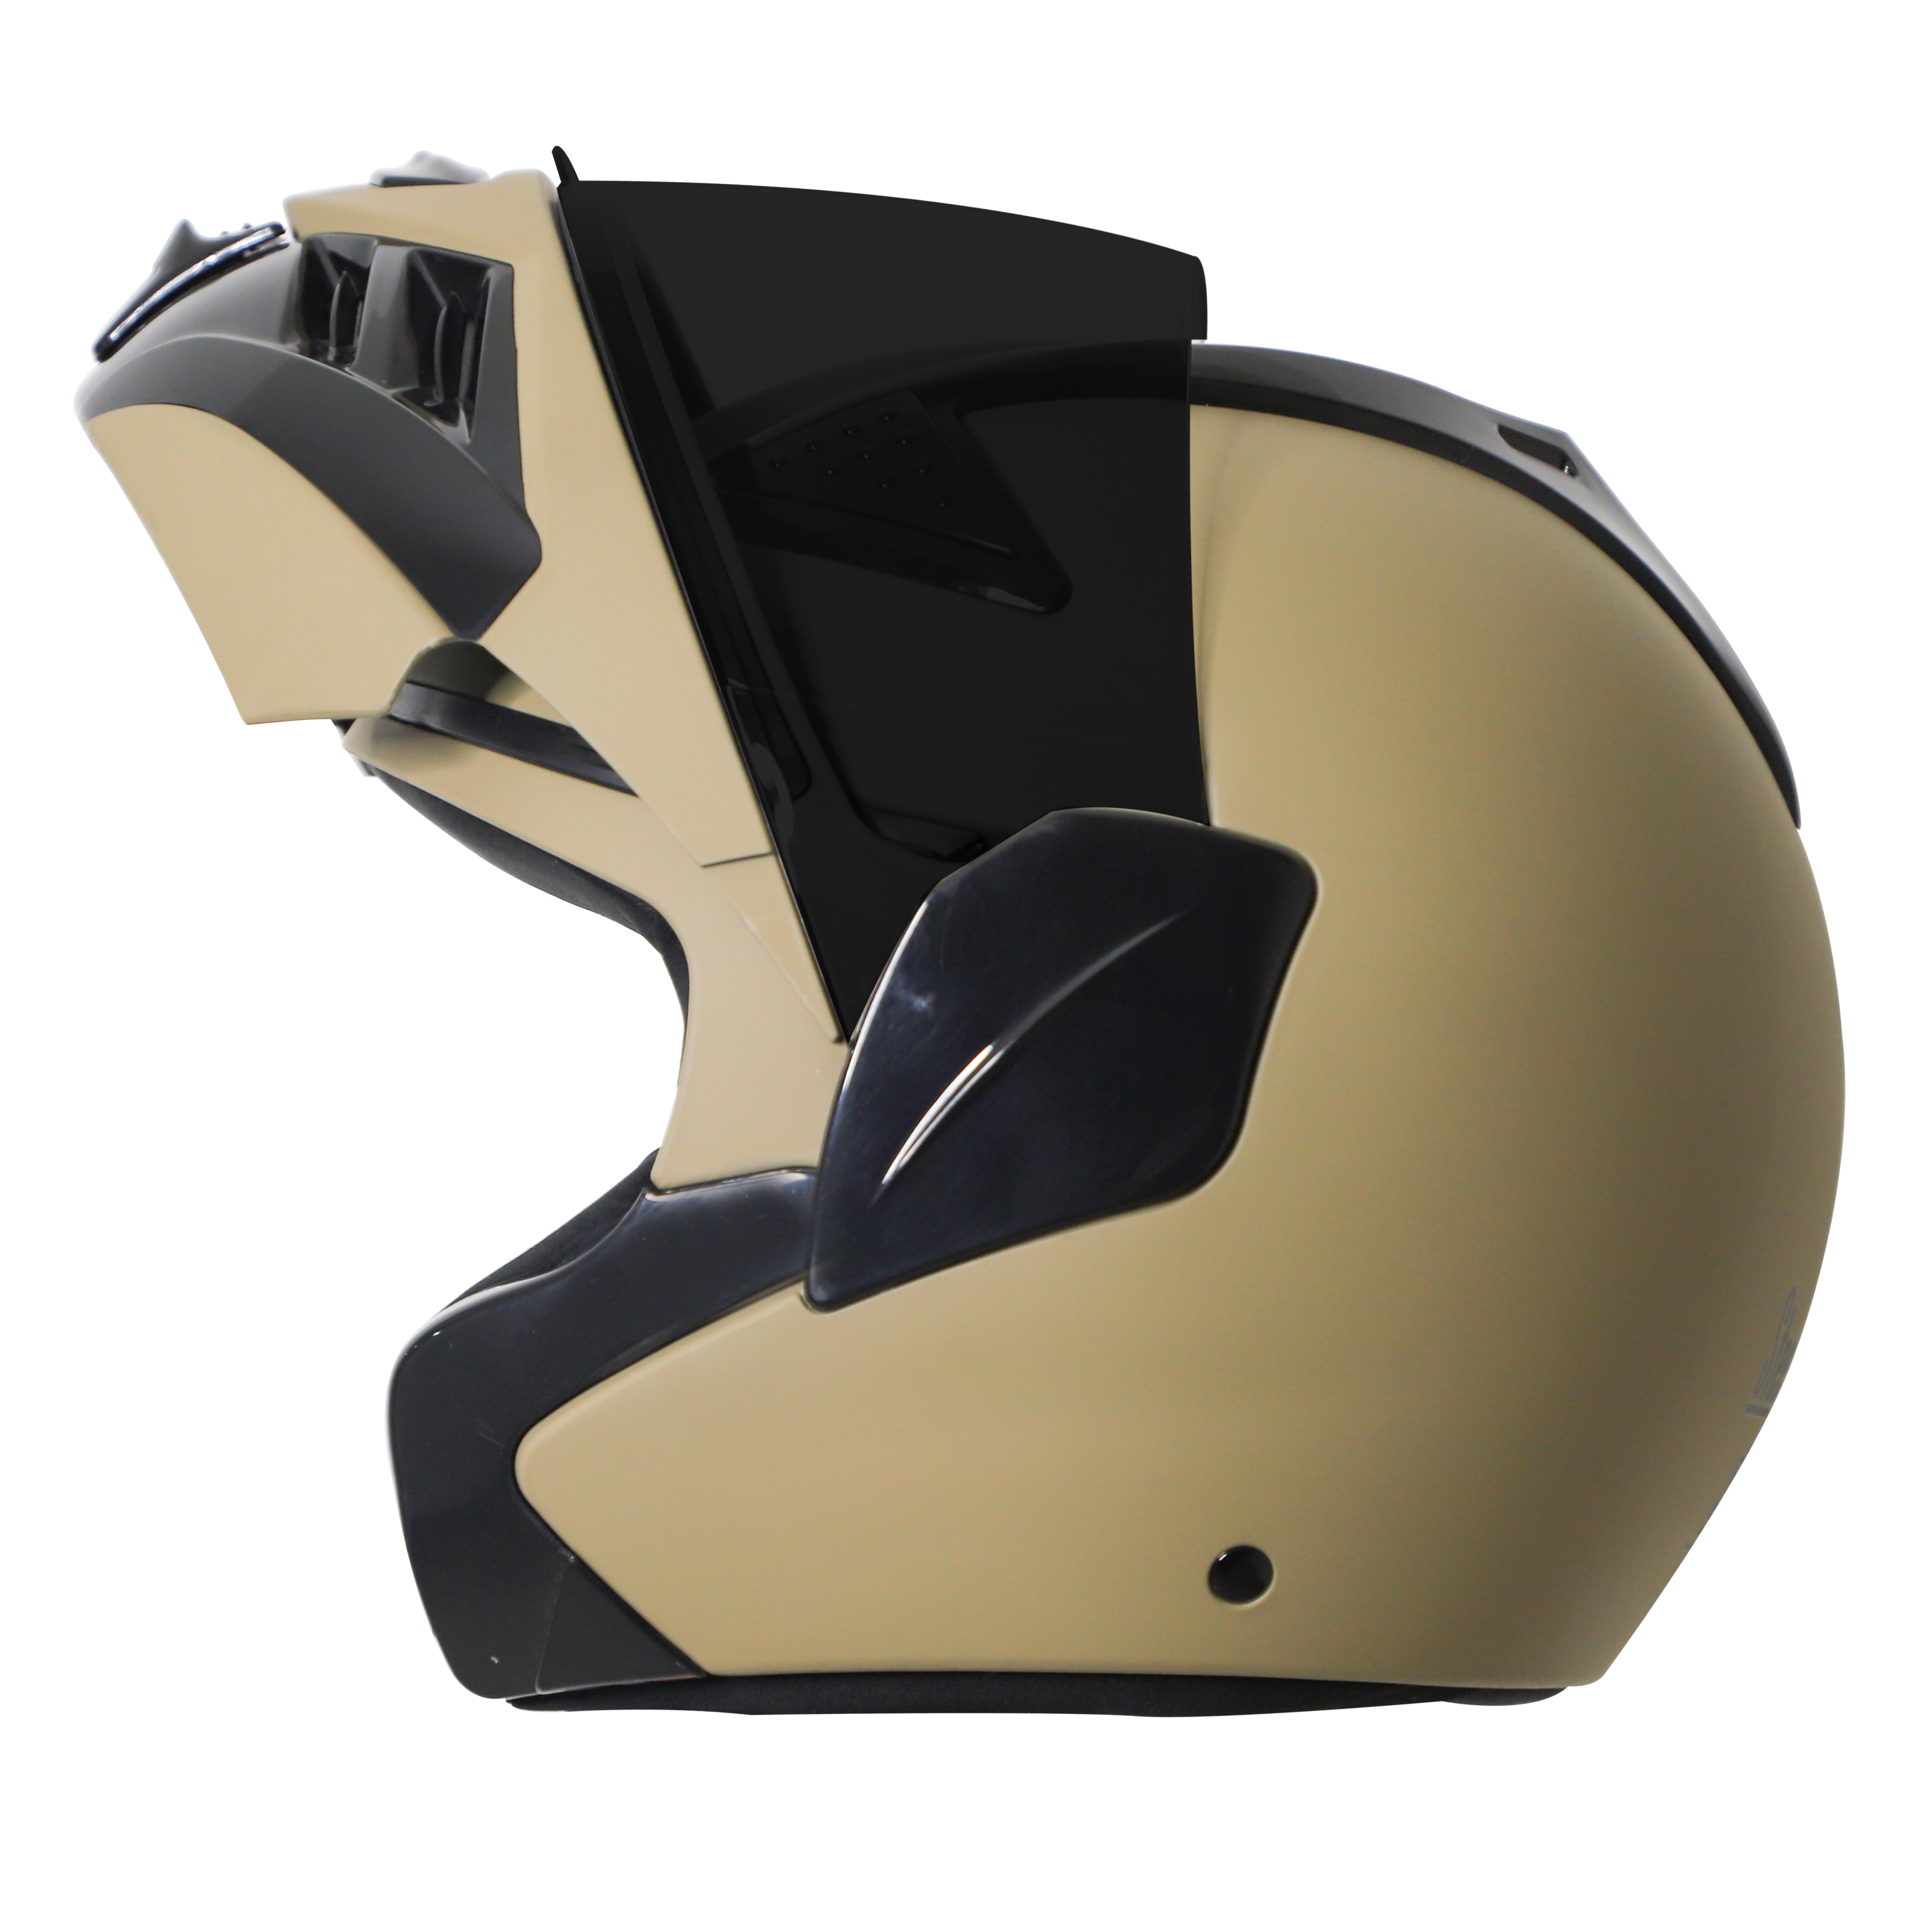 Steelbird SB-34 ISI Certified Flip-Up Helmet For Men And Women (Matt Desert Storm With Smoke Visor)